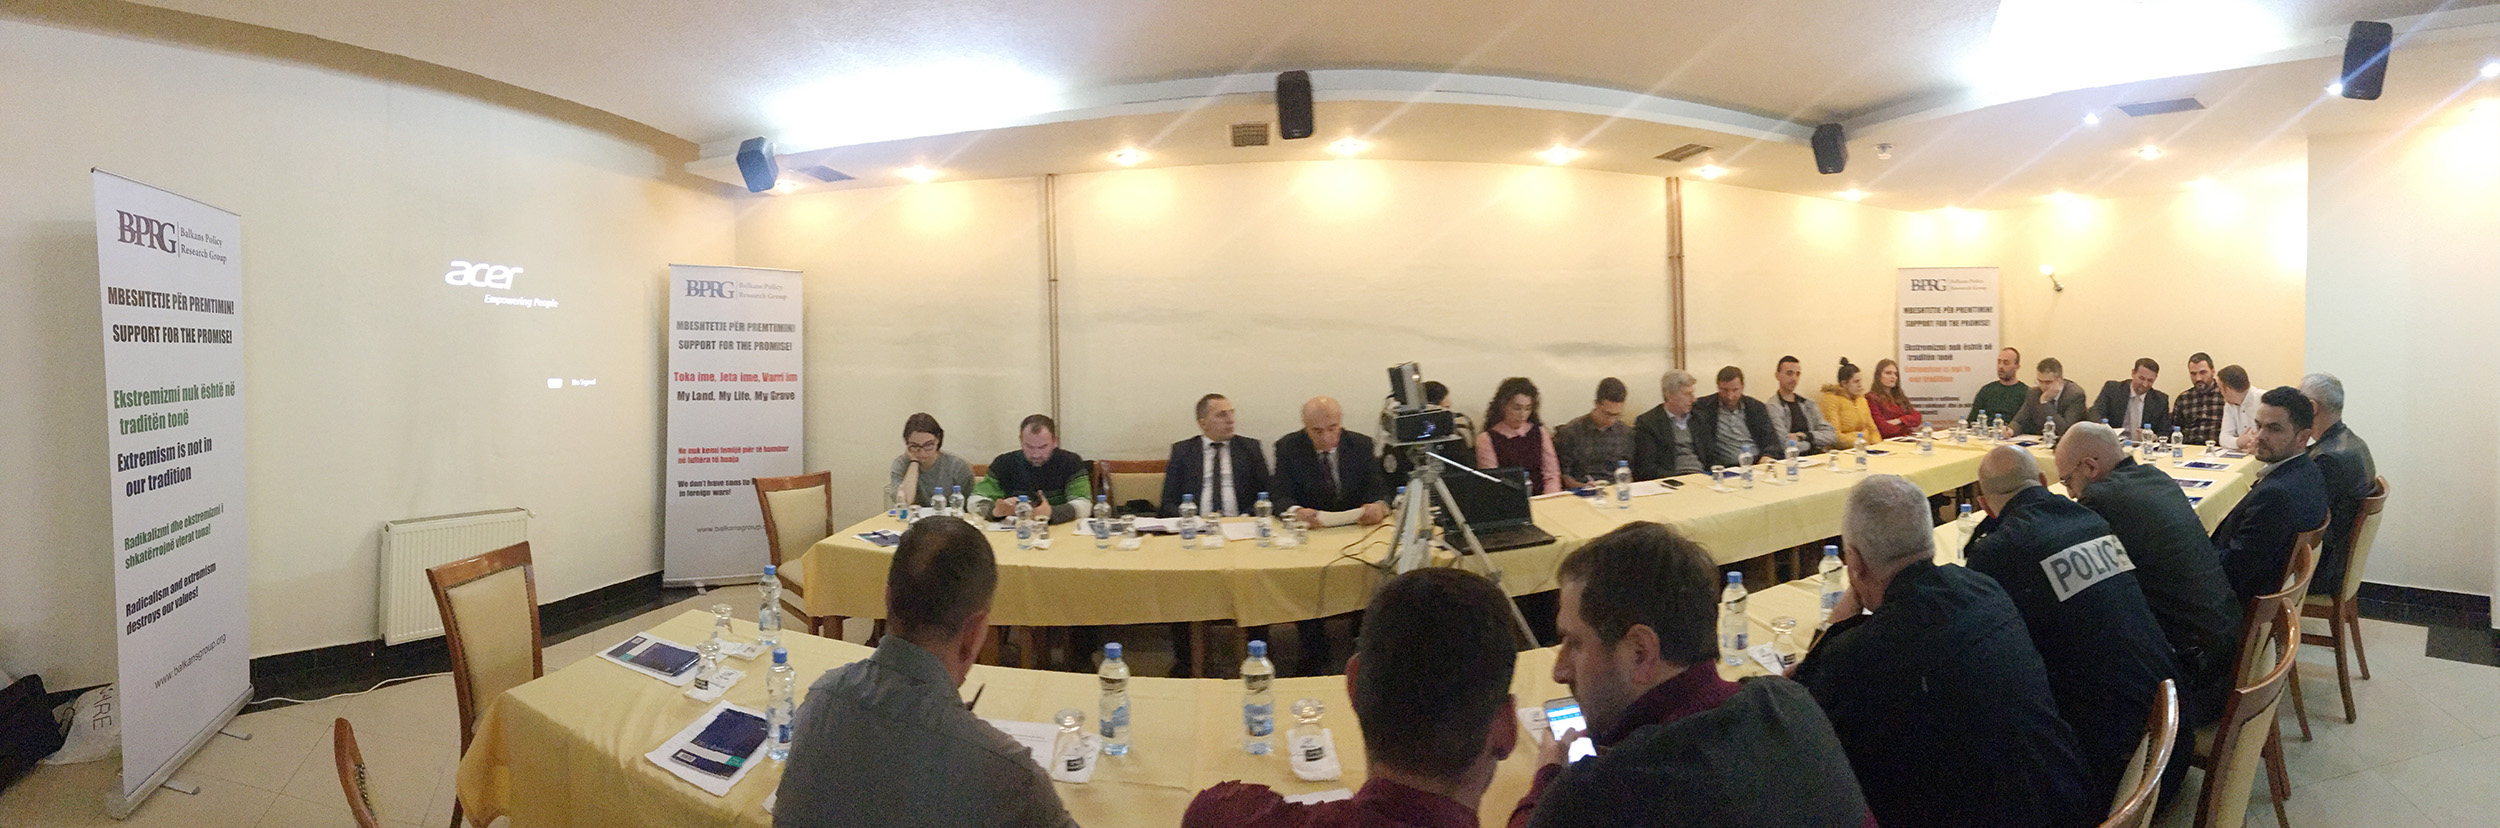 Javna debata u Uroševcu – „Podrška za obećanje“ Kampanja za podršku borbi protiv radikalizacije